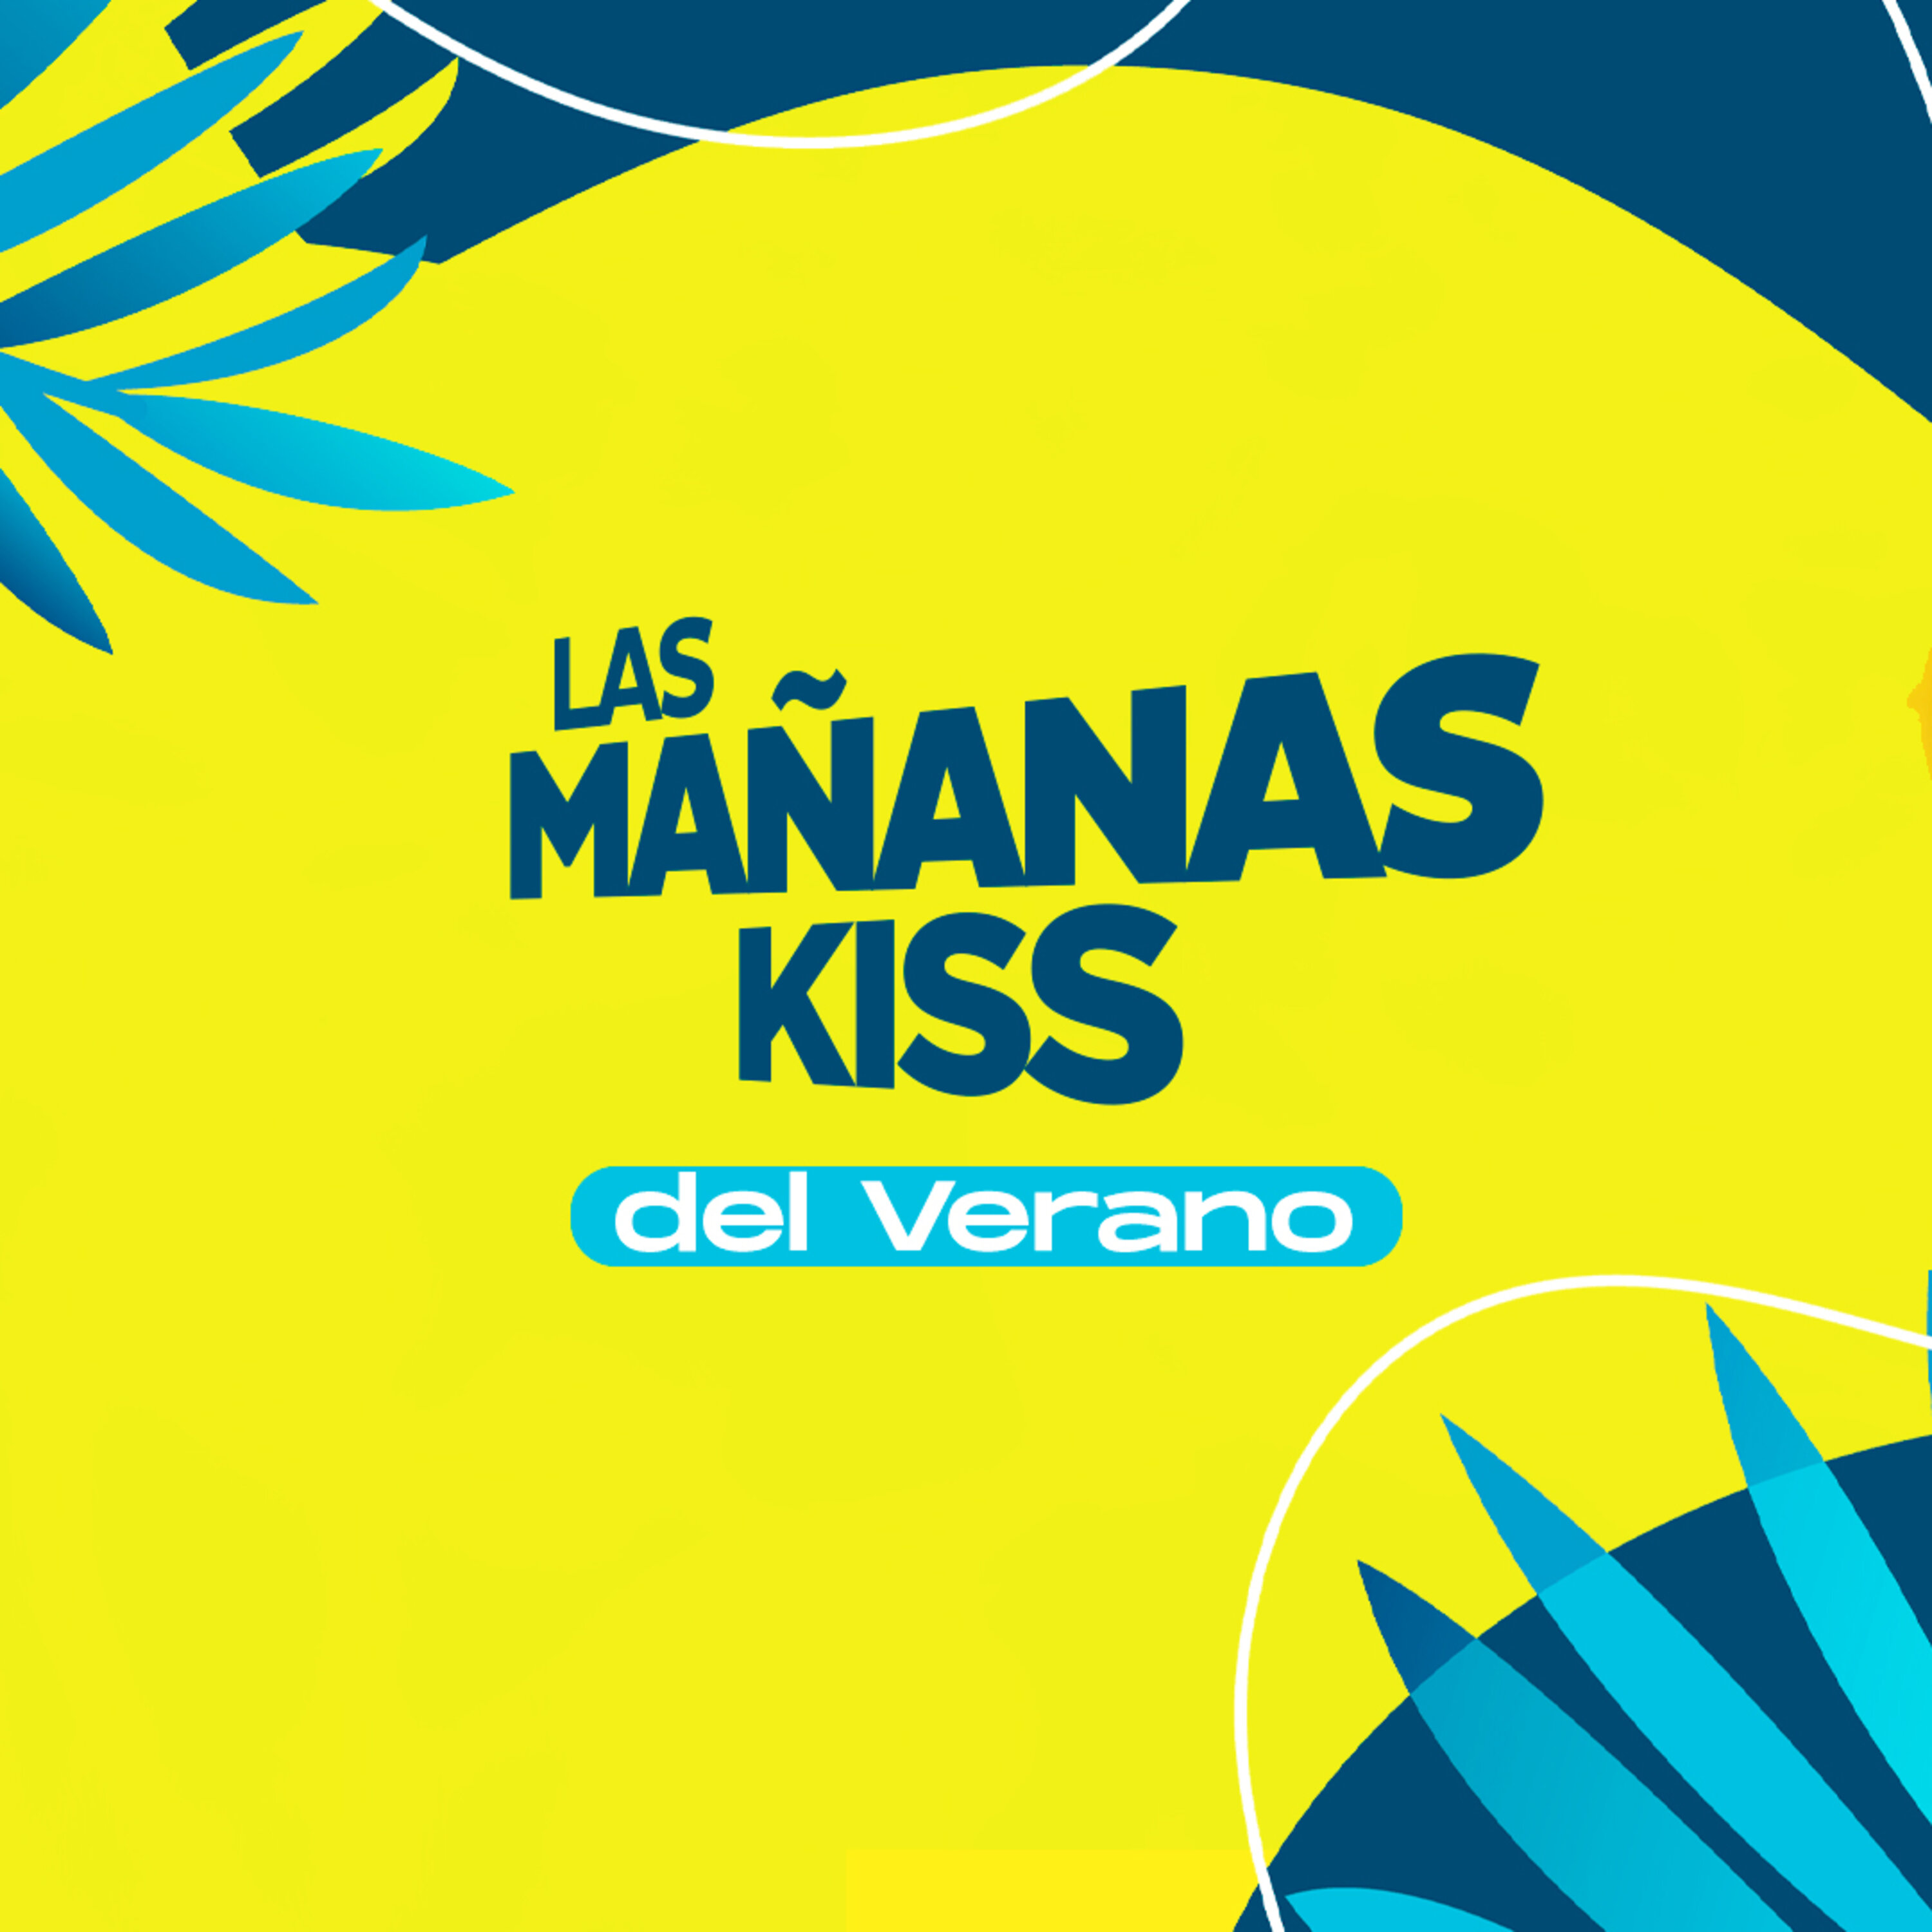 Las Mañanas KISS del Verano (10/08/2022 - 07-08h)